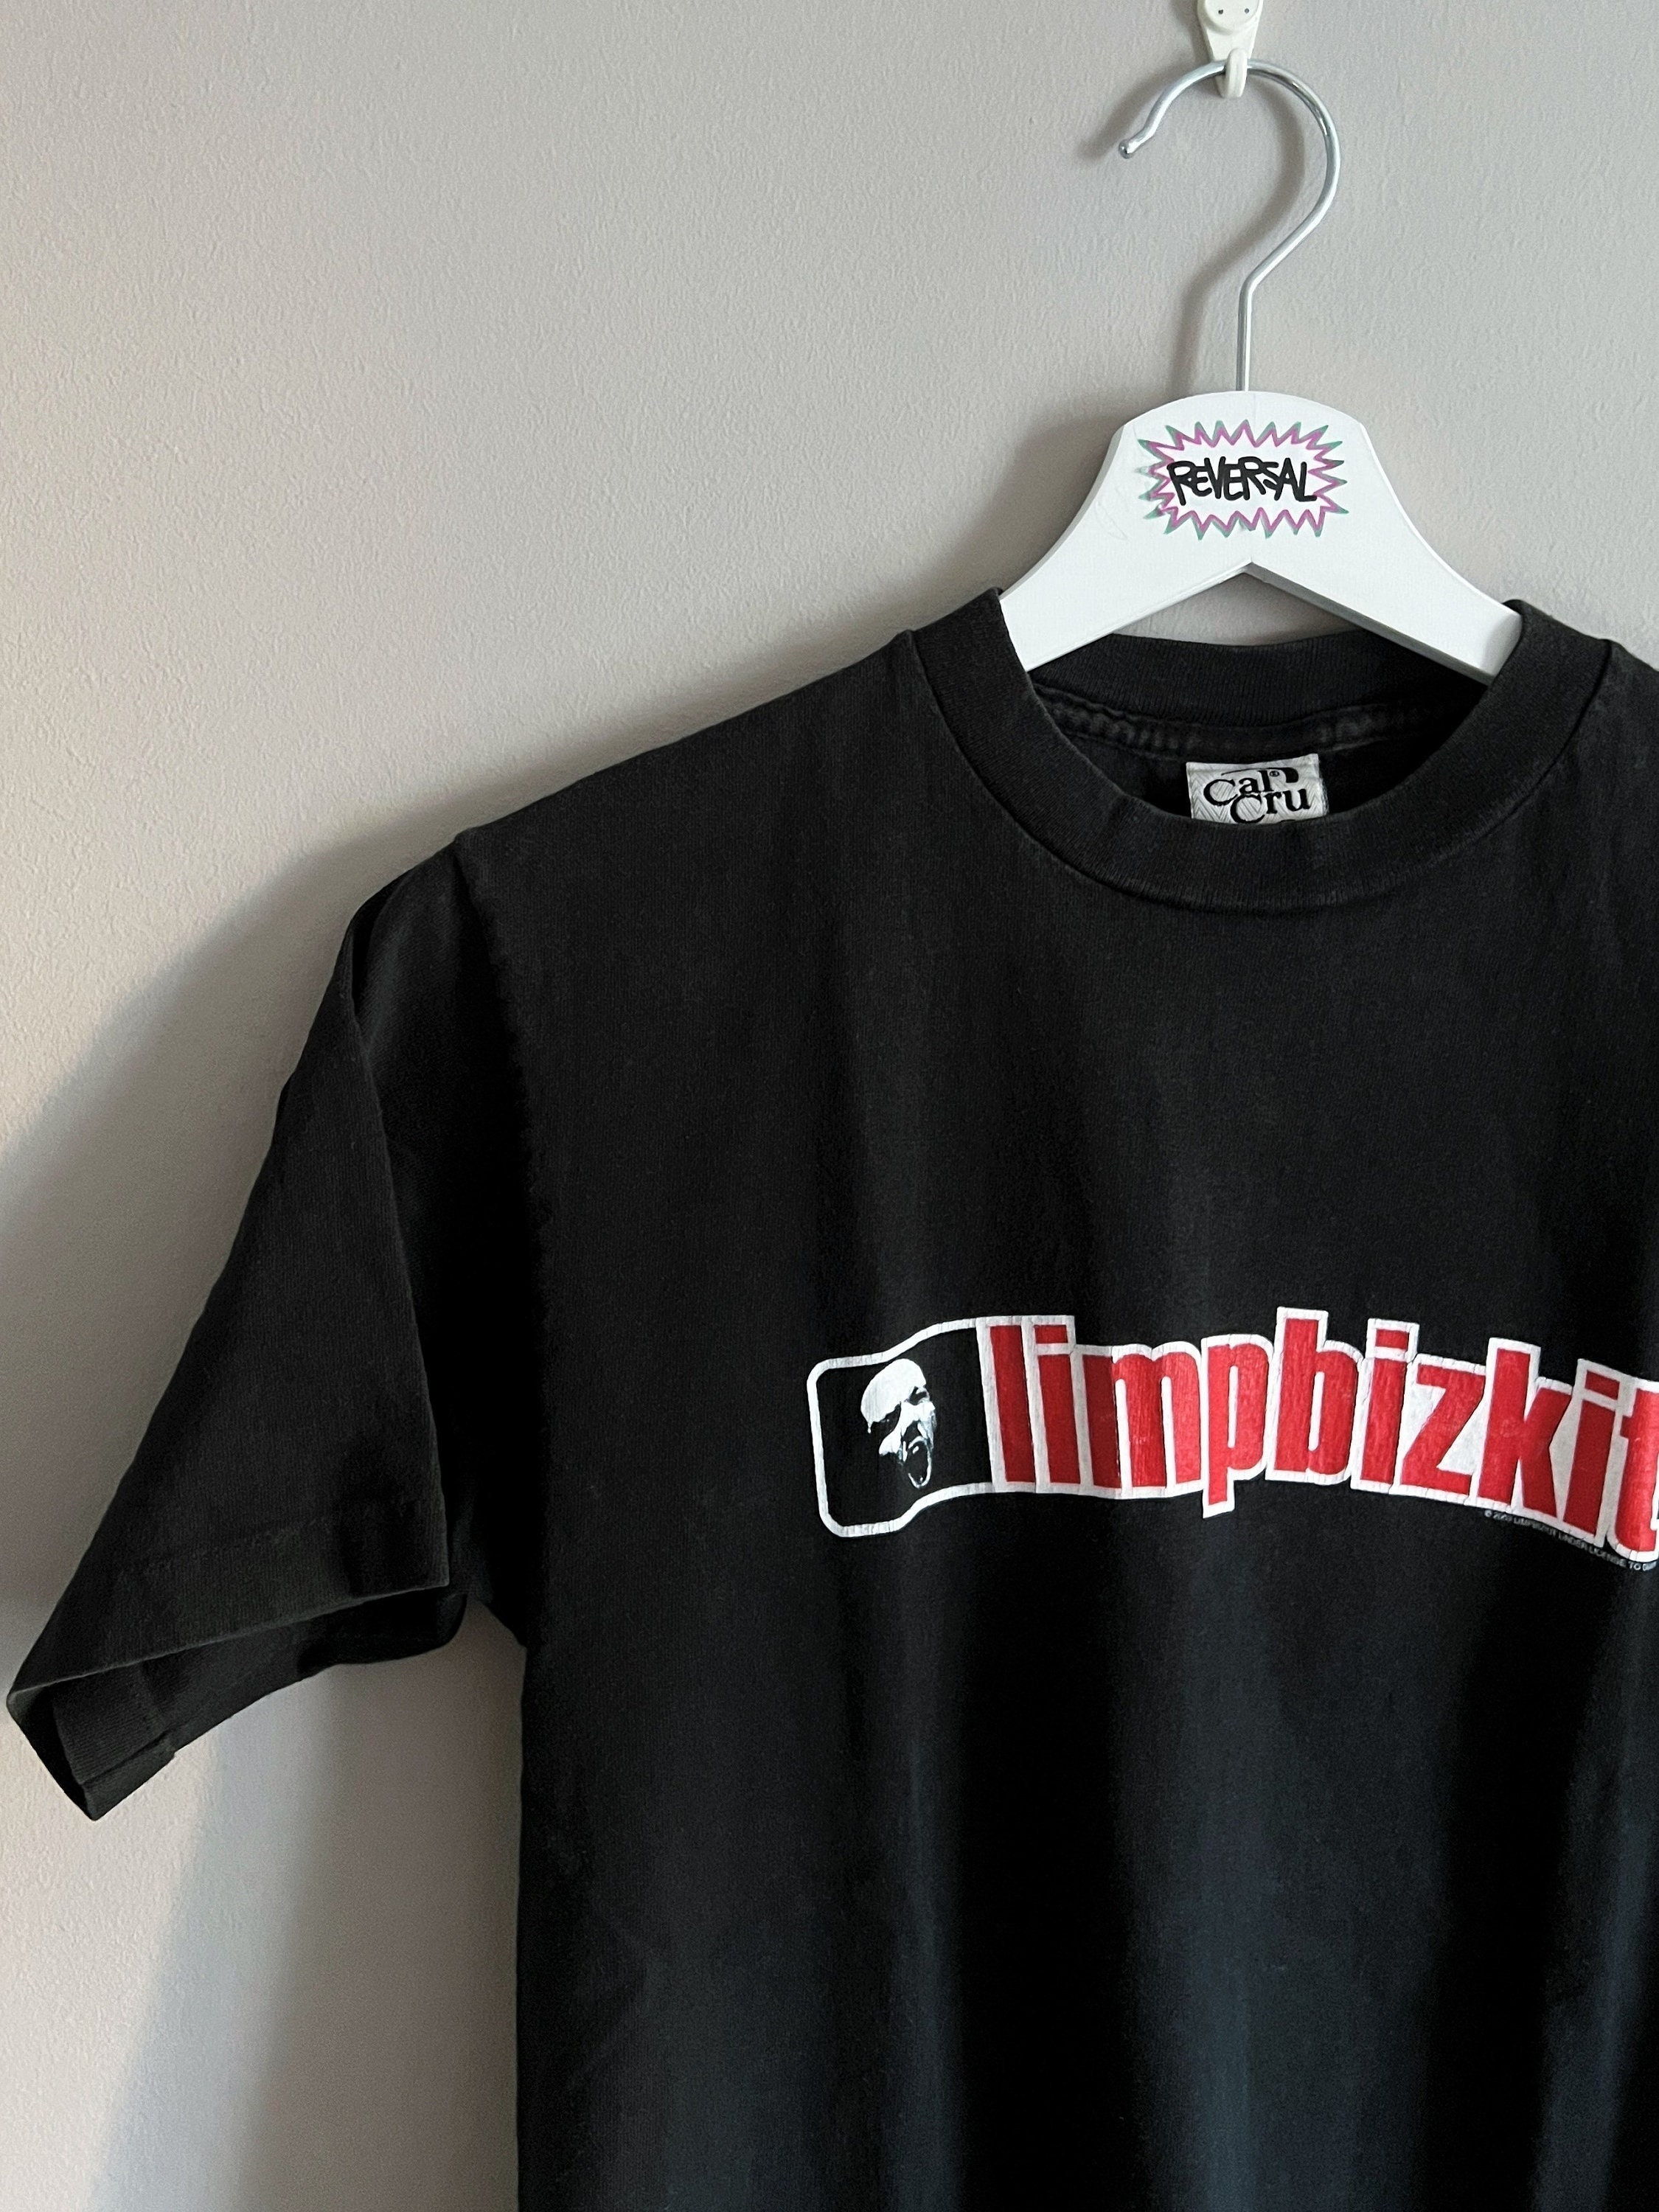 Maat XL Vintage 1999 Limp Bizkit belangrijke andere 2de album rap Rock nu metal band tshirt. Kleding Gender-neutrale kleding volwassenen Tops & T-shirts T-shirts T-shirts met print Gratis verzending! 